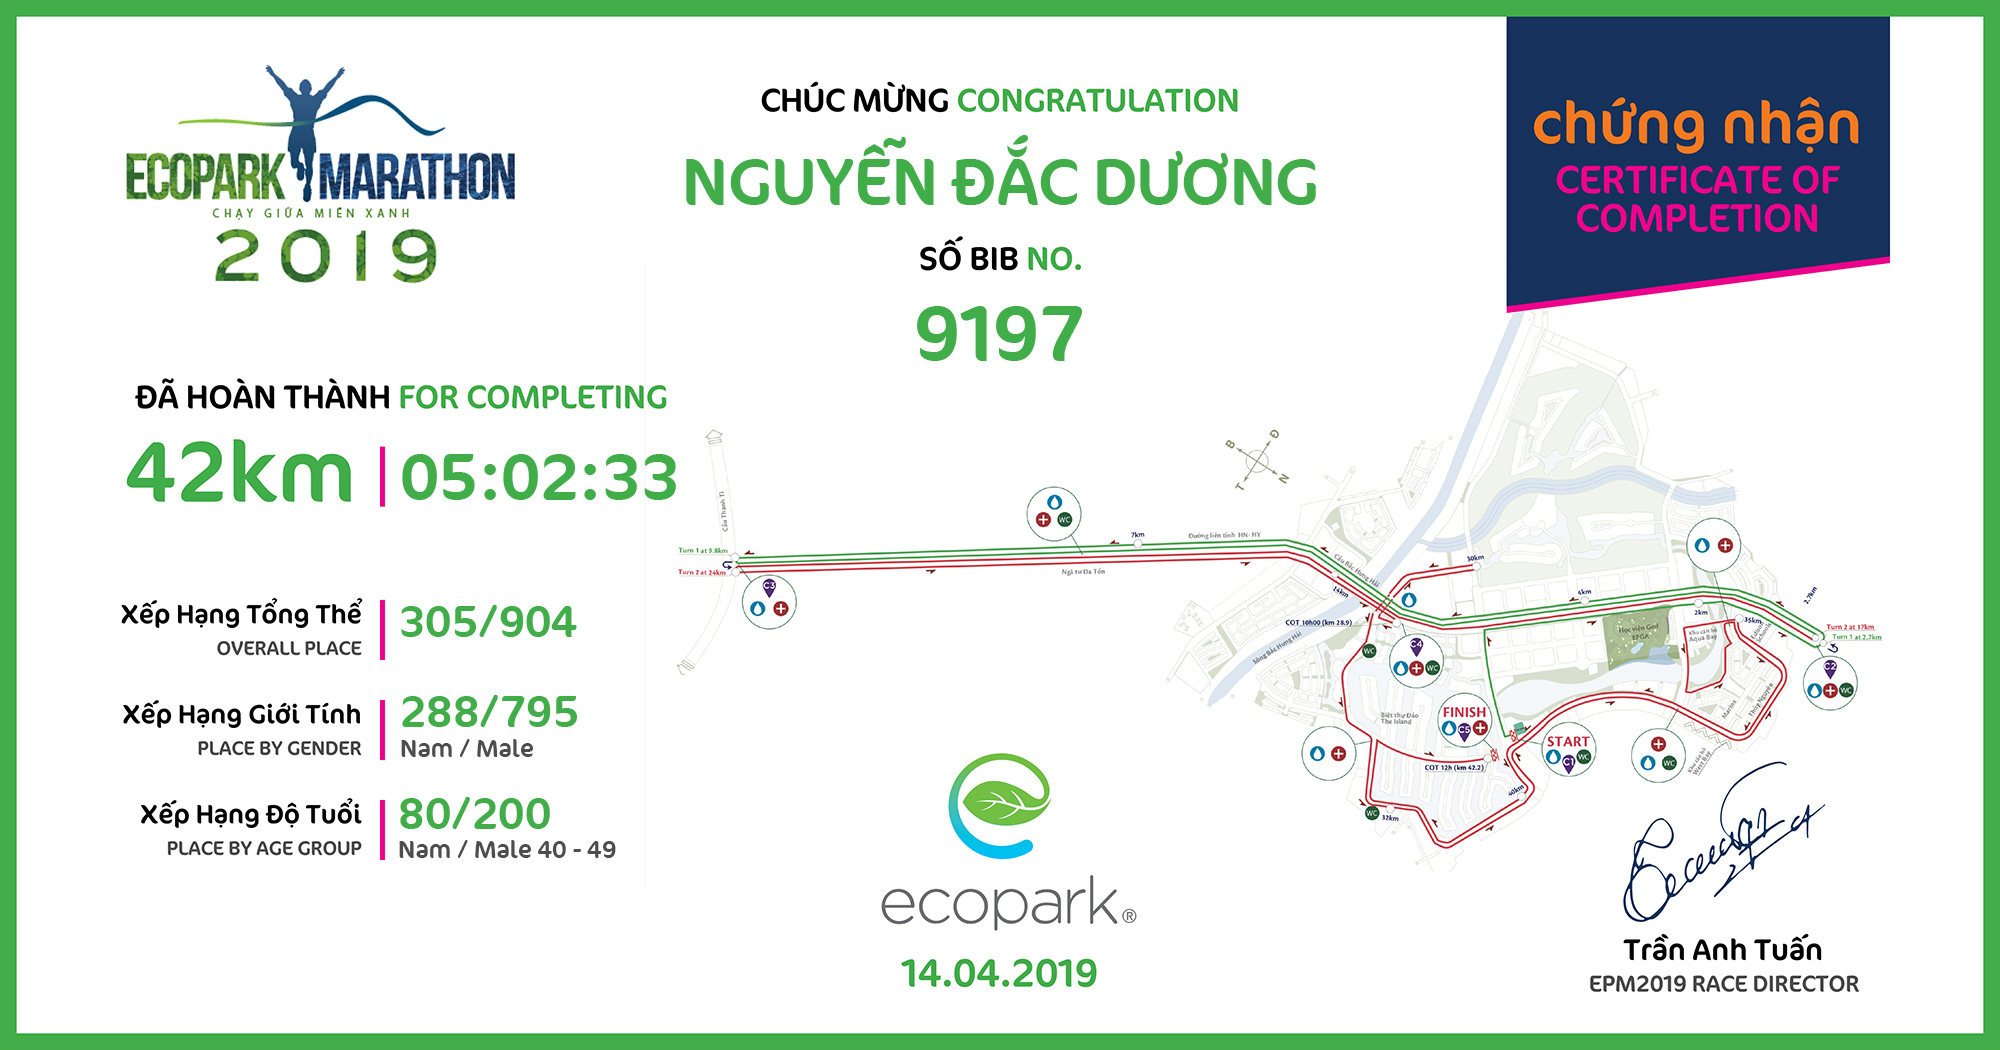 9197 - Nguyễn Đắc Dương